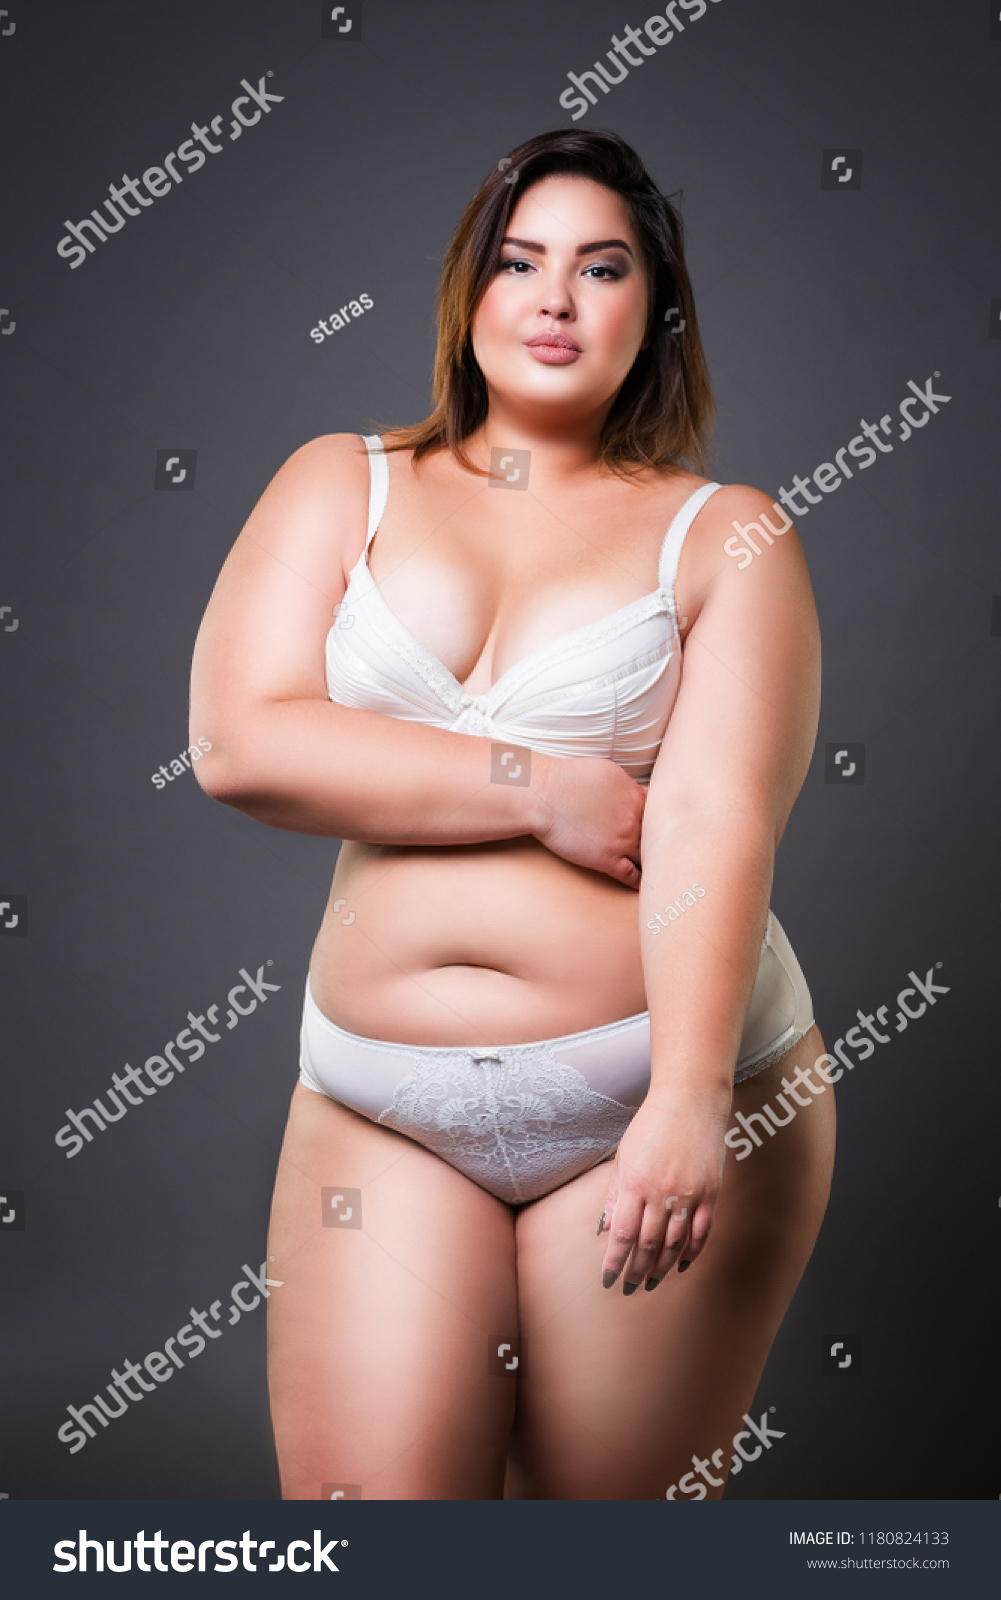 fat chicks in lingerie